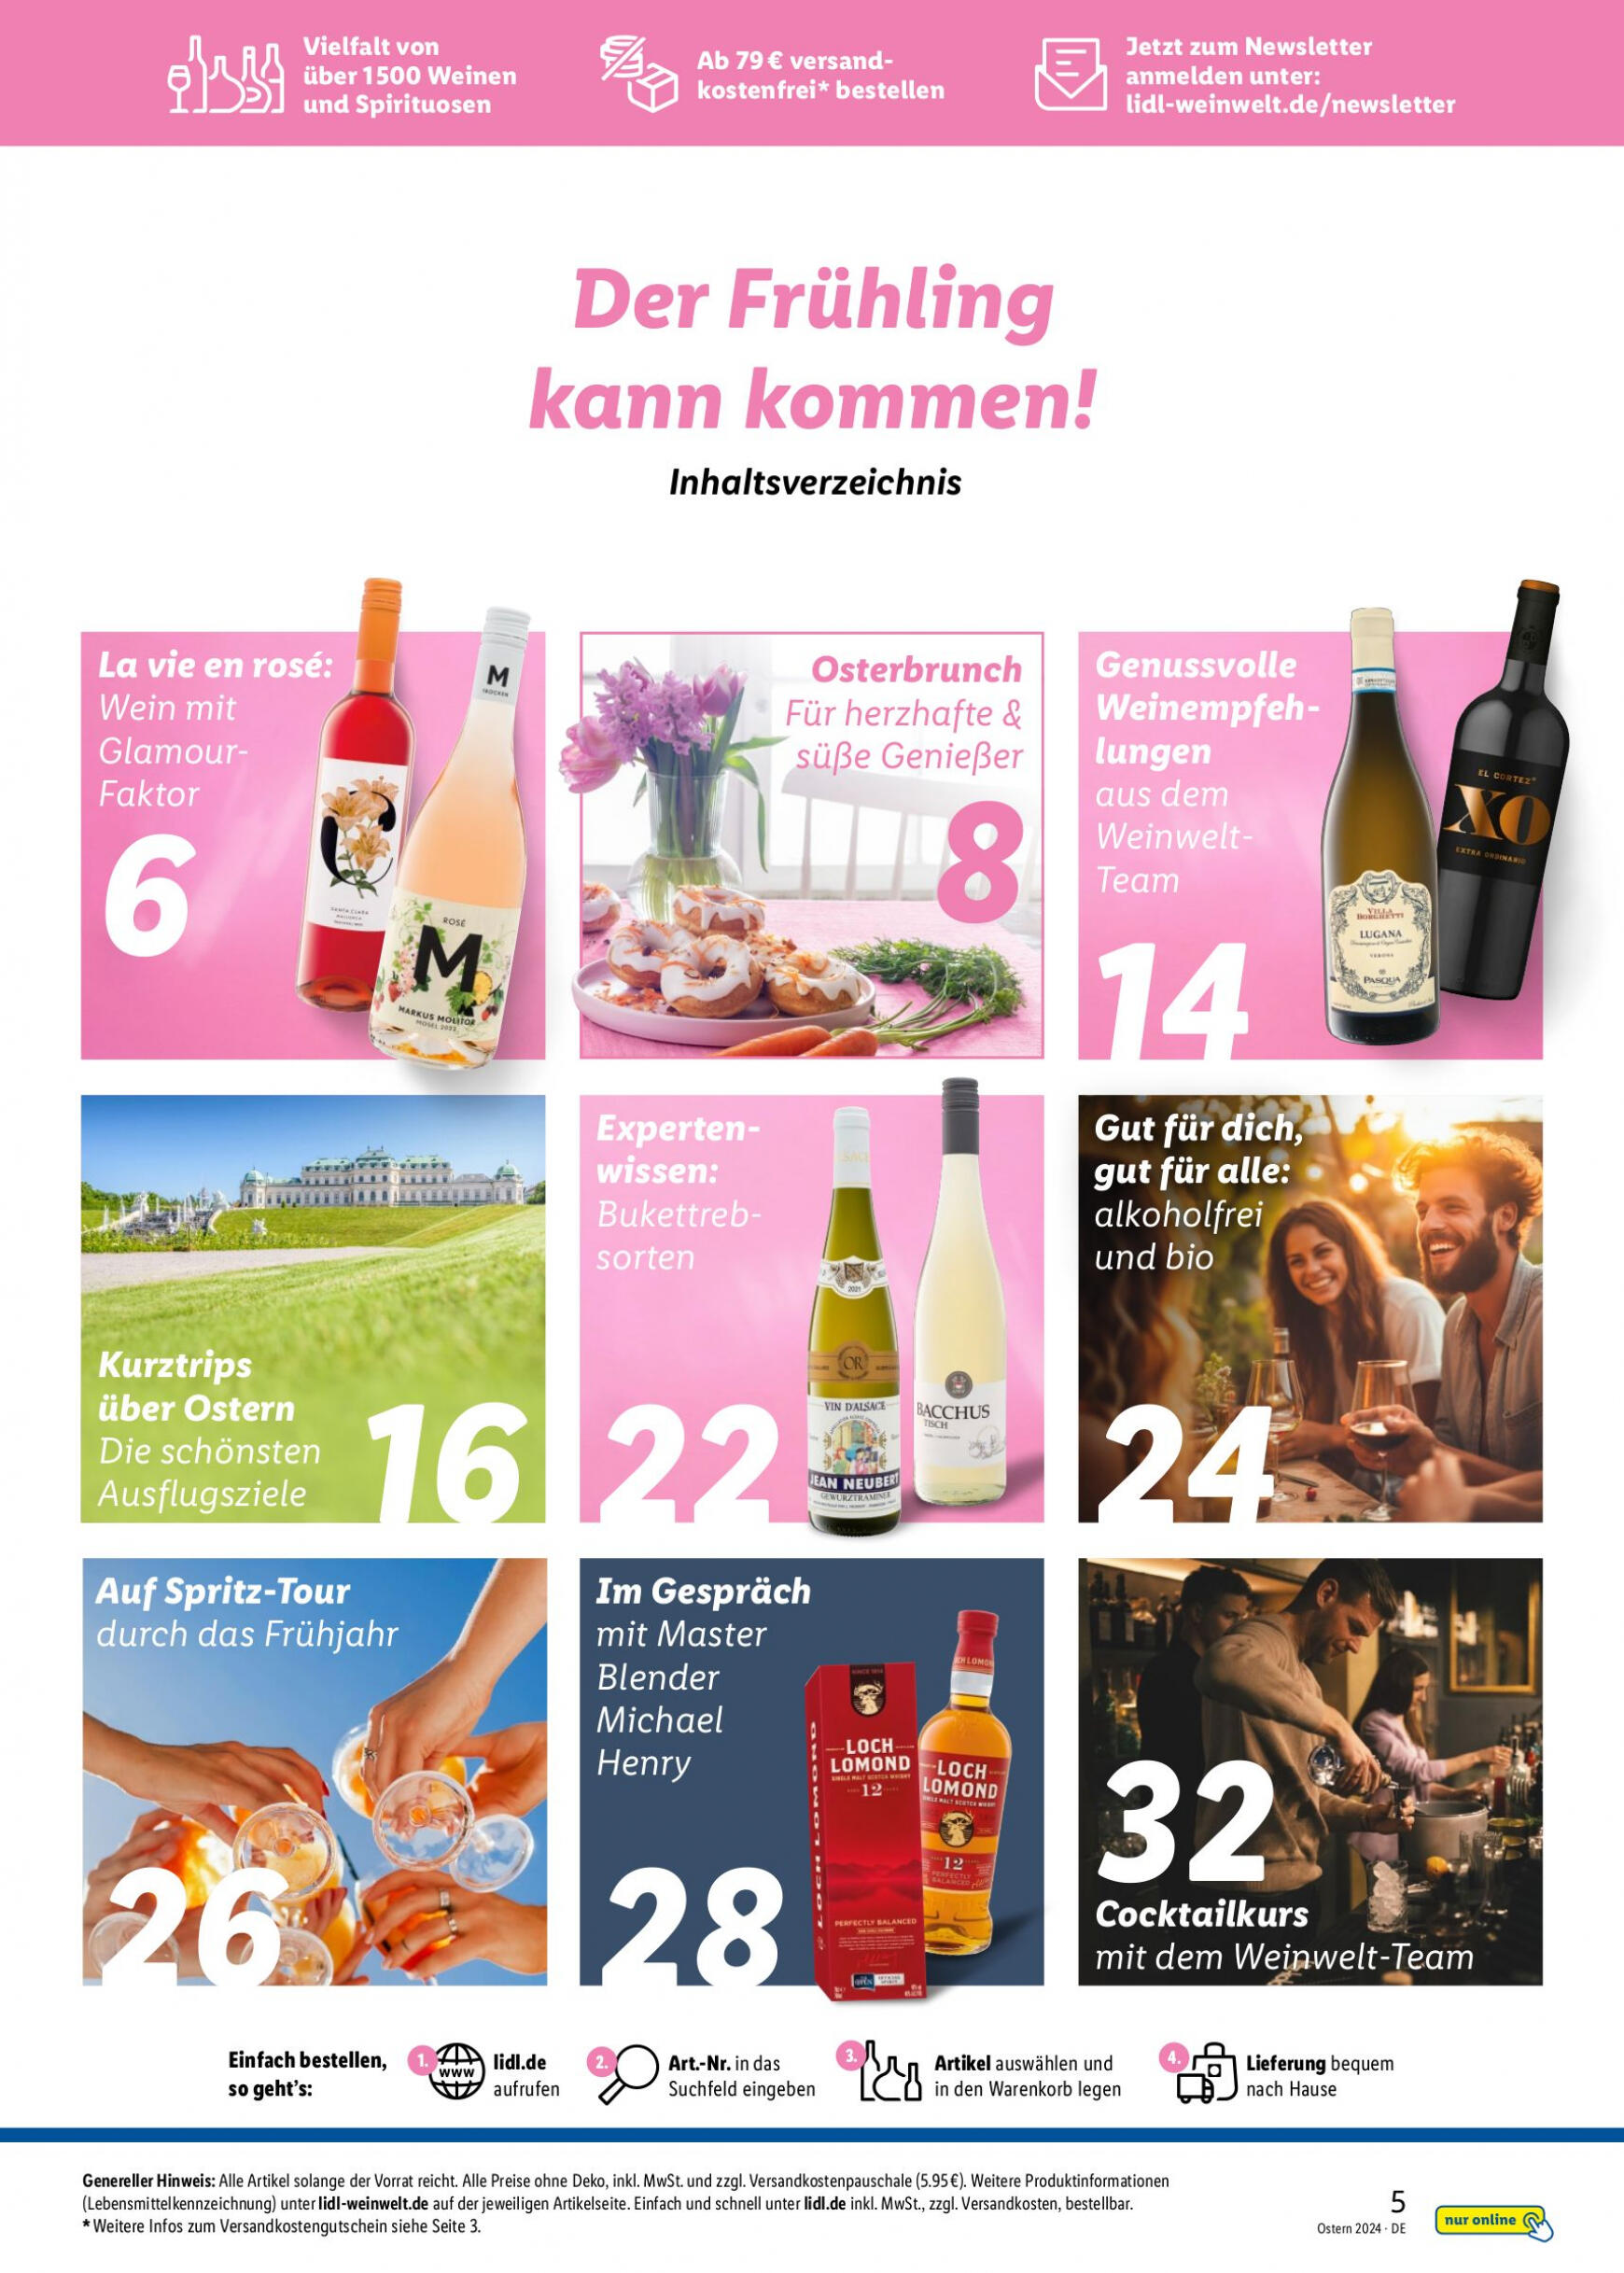 lidl - Flyer Lidl - Wein Entkorkt aktuell 04.03. - 30.04. - page: 5